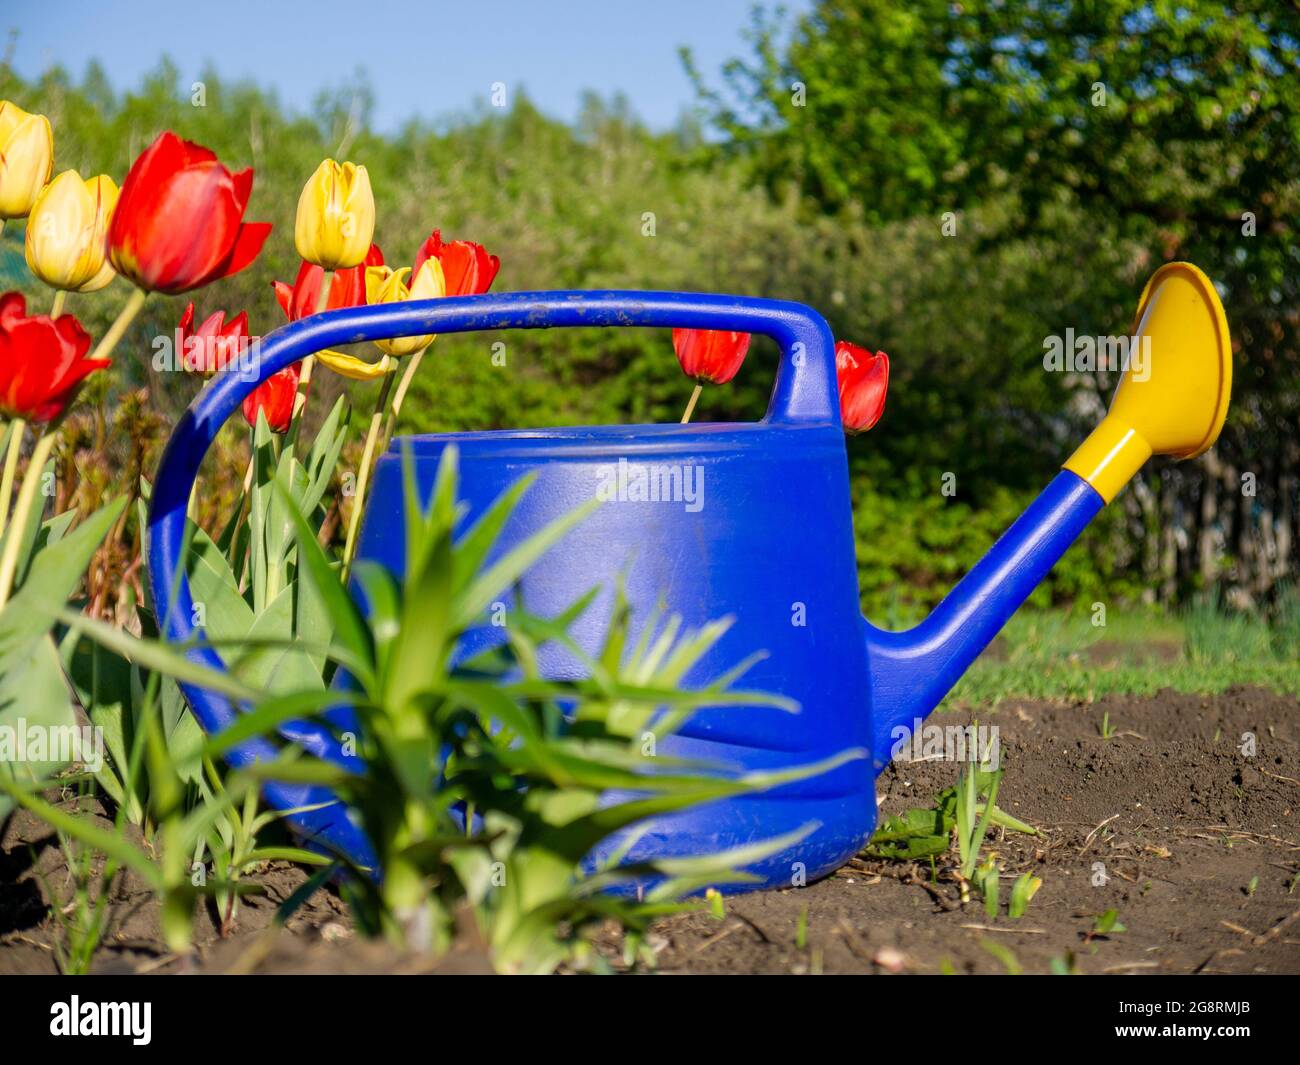 El riego del jardín puede estar parado en el suelo al lado de los tulipanes. Jardinería en un área personal de una casa de campo. Foto de stock